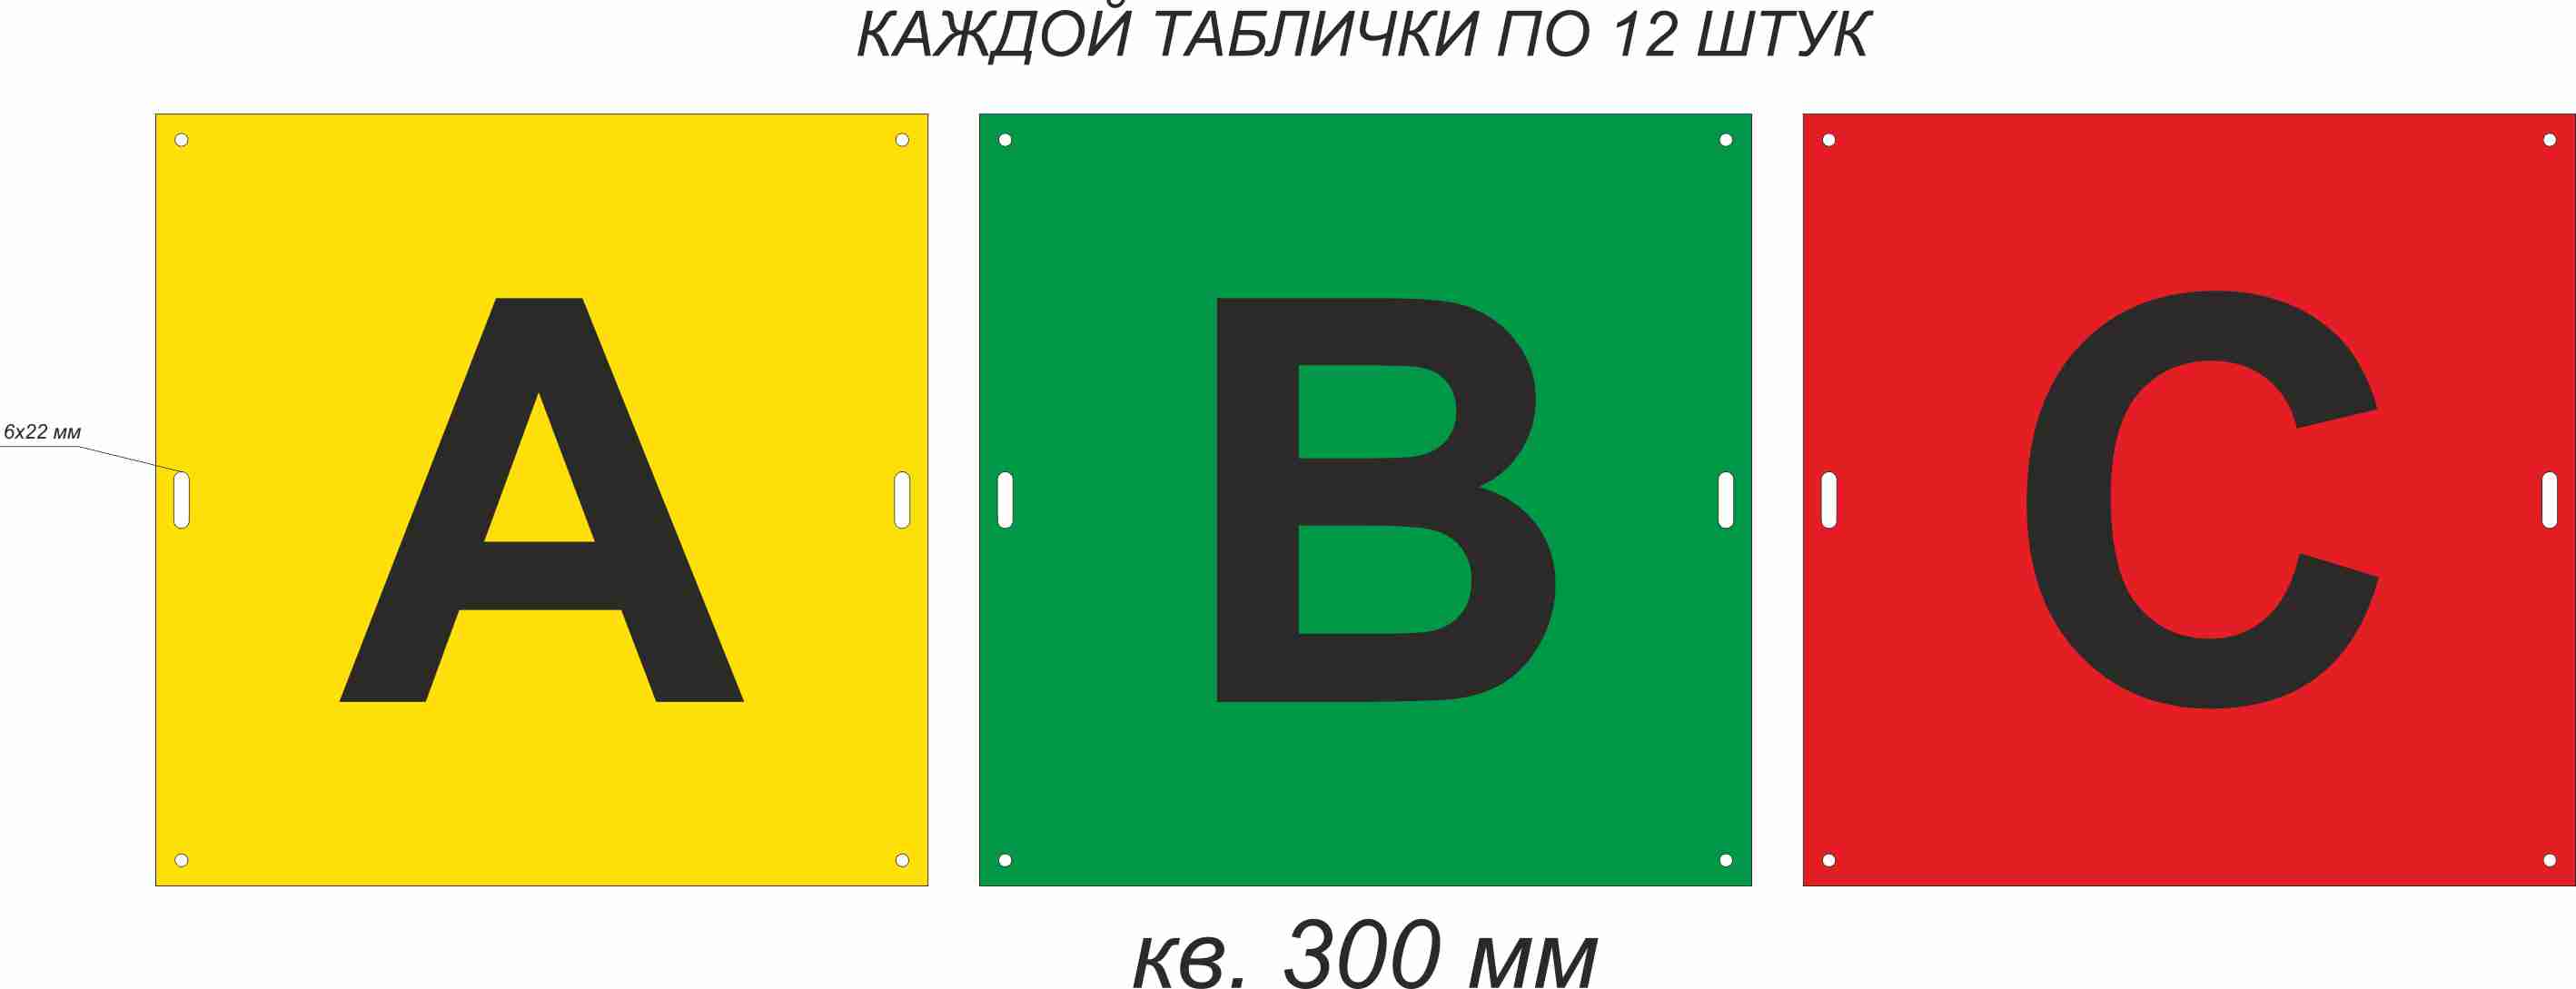 Расцветка фаз (А, Б, С)